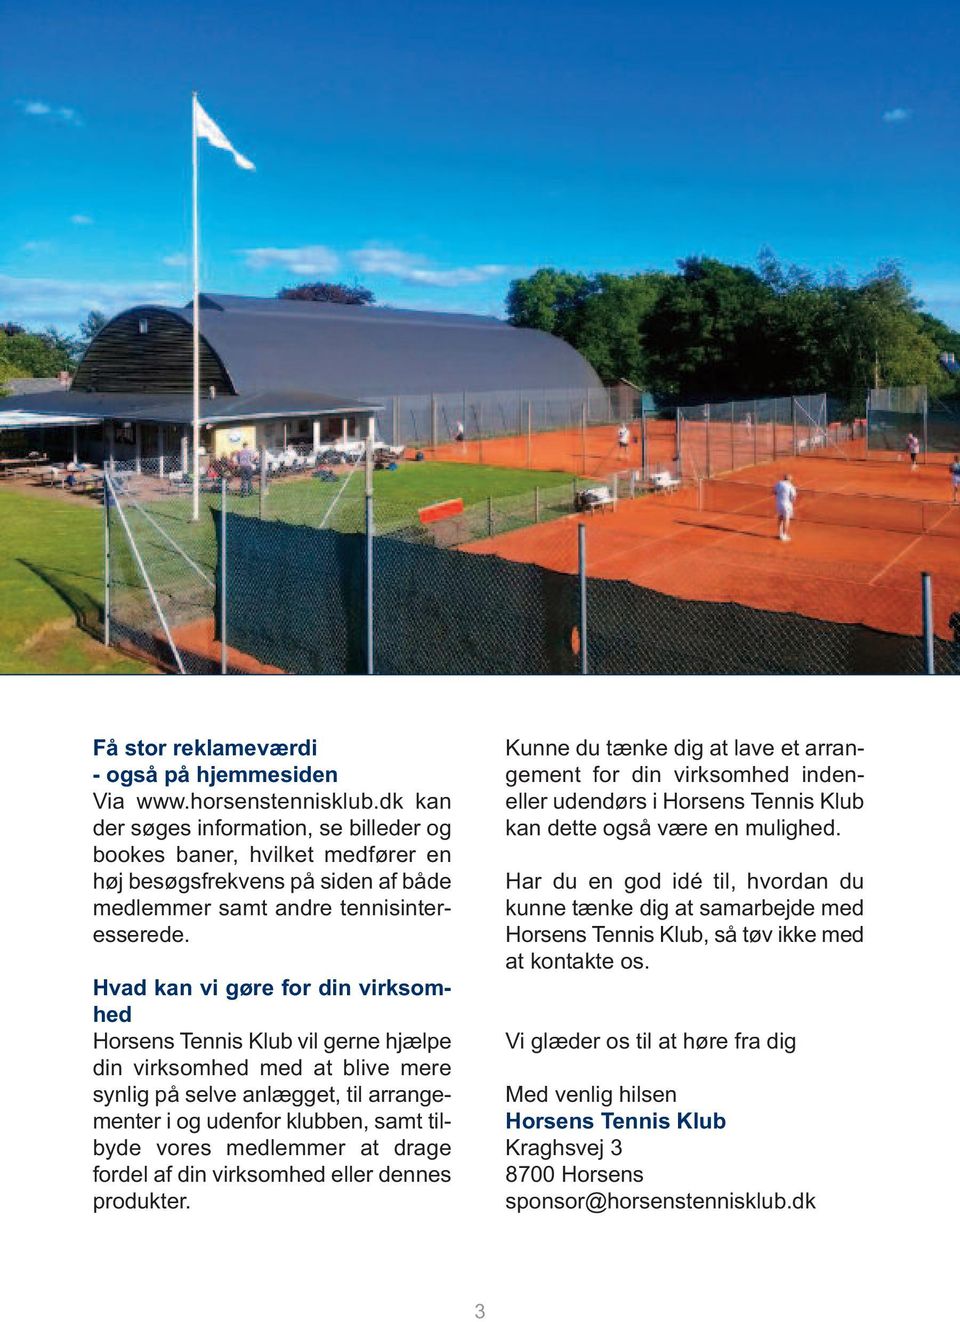 Hvad kan vi gøre for din virksomhed Horsens Tennis Klub vil gerne hjælpe din virksomhed med at blive mere synlig på selve anlægget, til arrangementer i og udenfor klubben, samt tilbyde vores